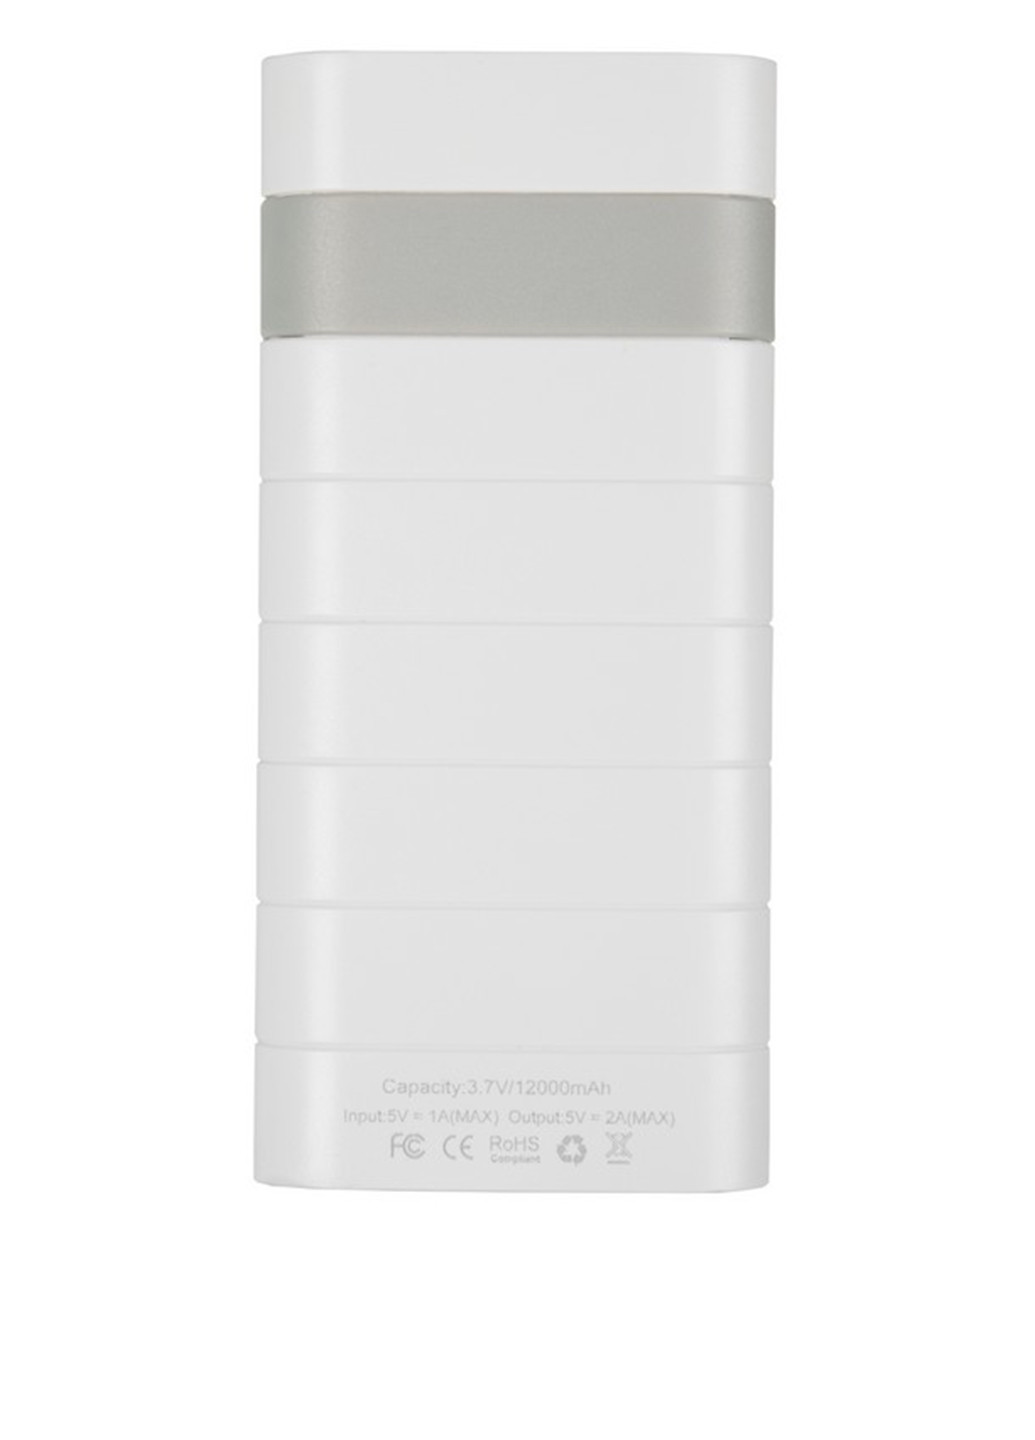 Універсальна батарея Promo Series 12000mAh White Optima op-12 (130135448)